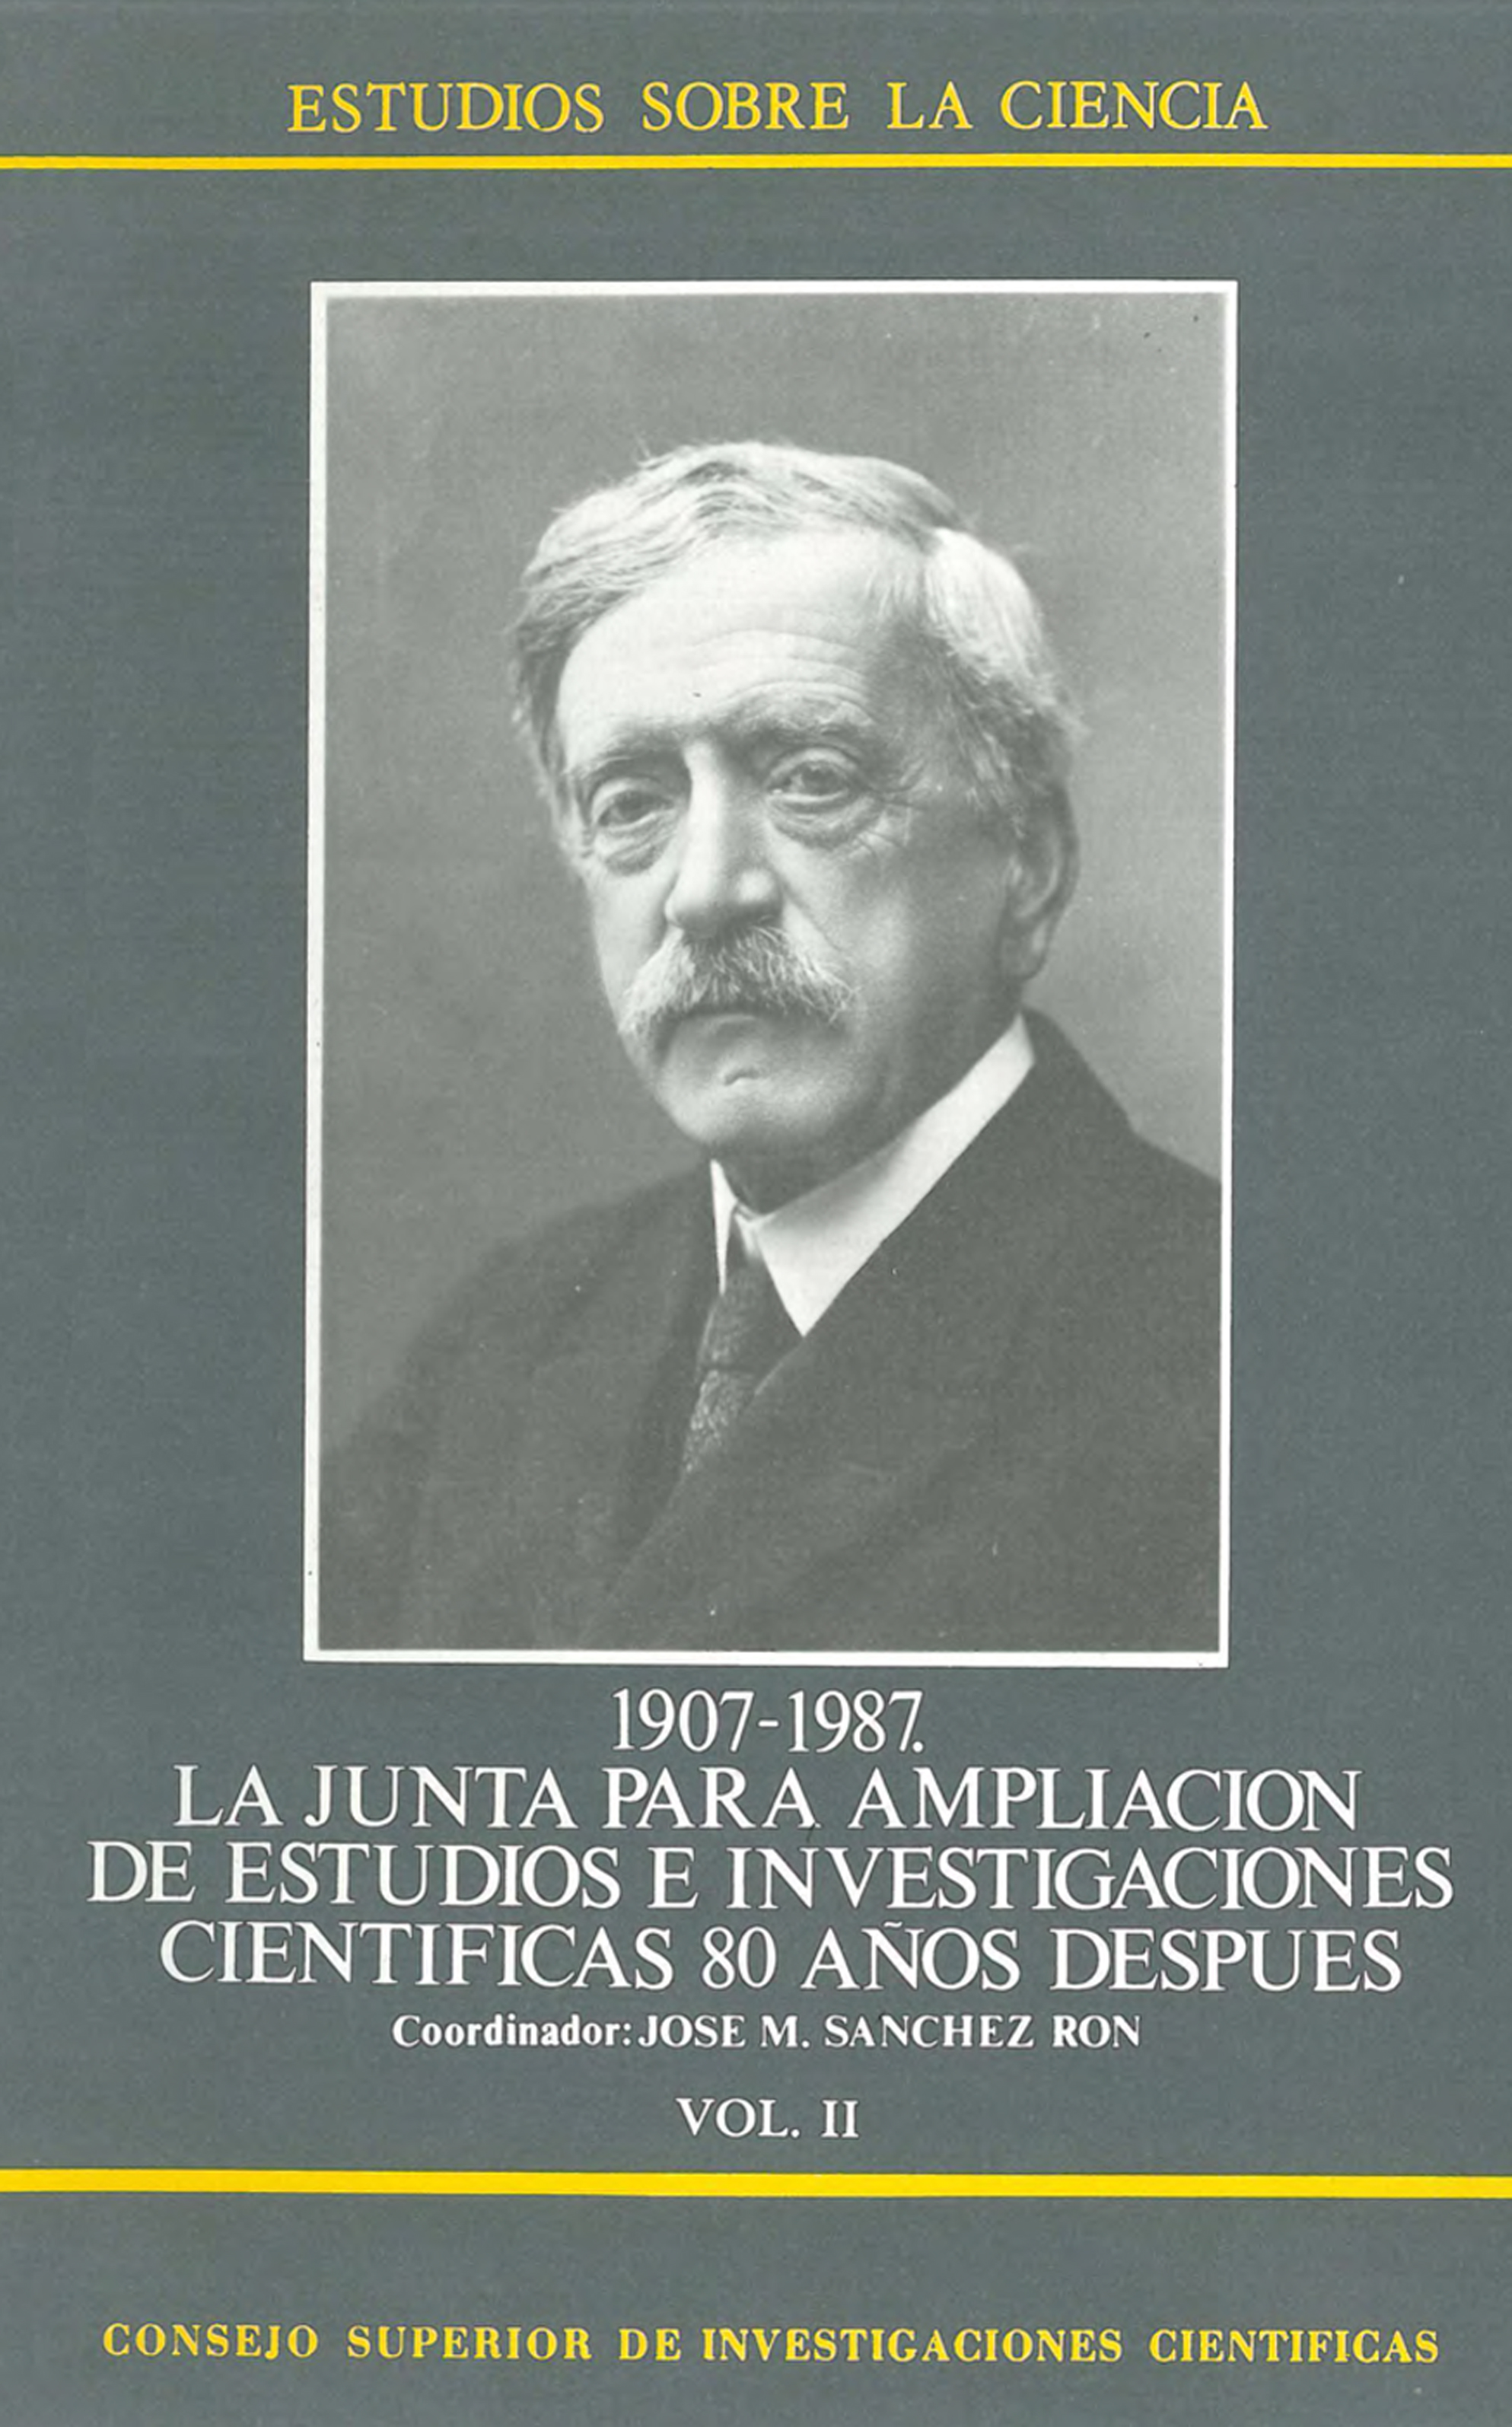 1907-1987, la Junta para Ampliación de Estudios e Investigaciones Científicas 80 años después. Vol. II